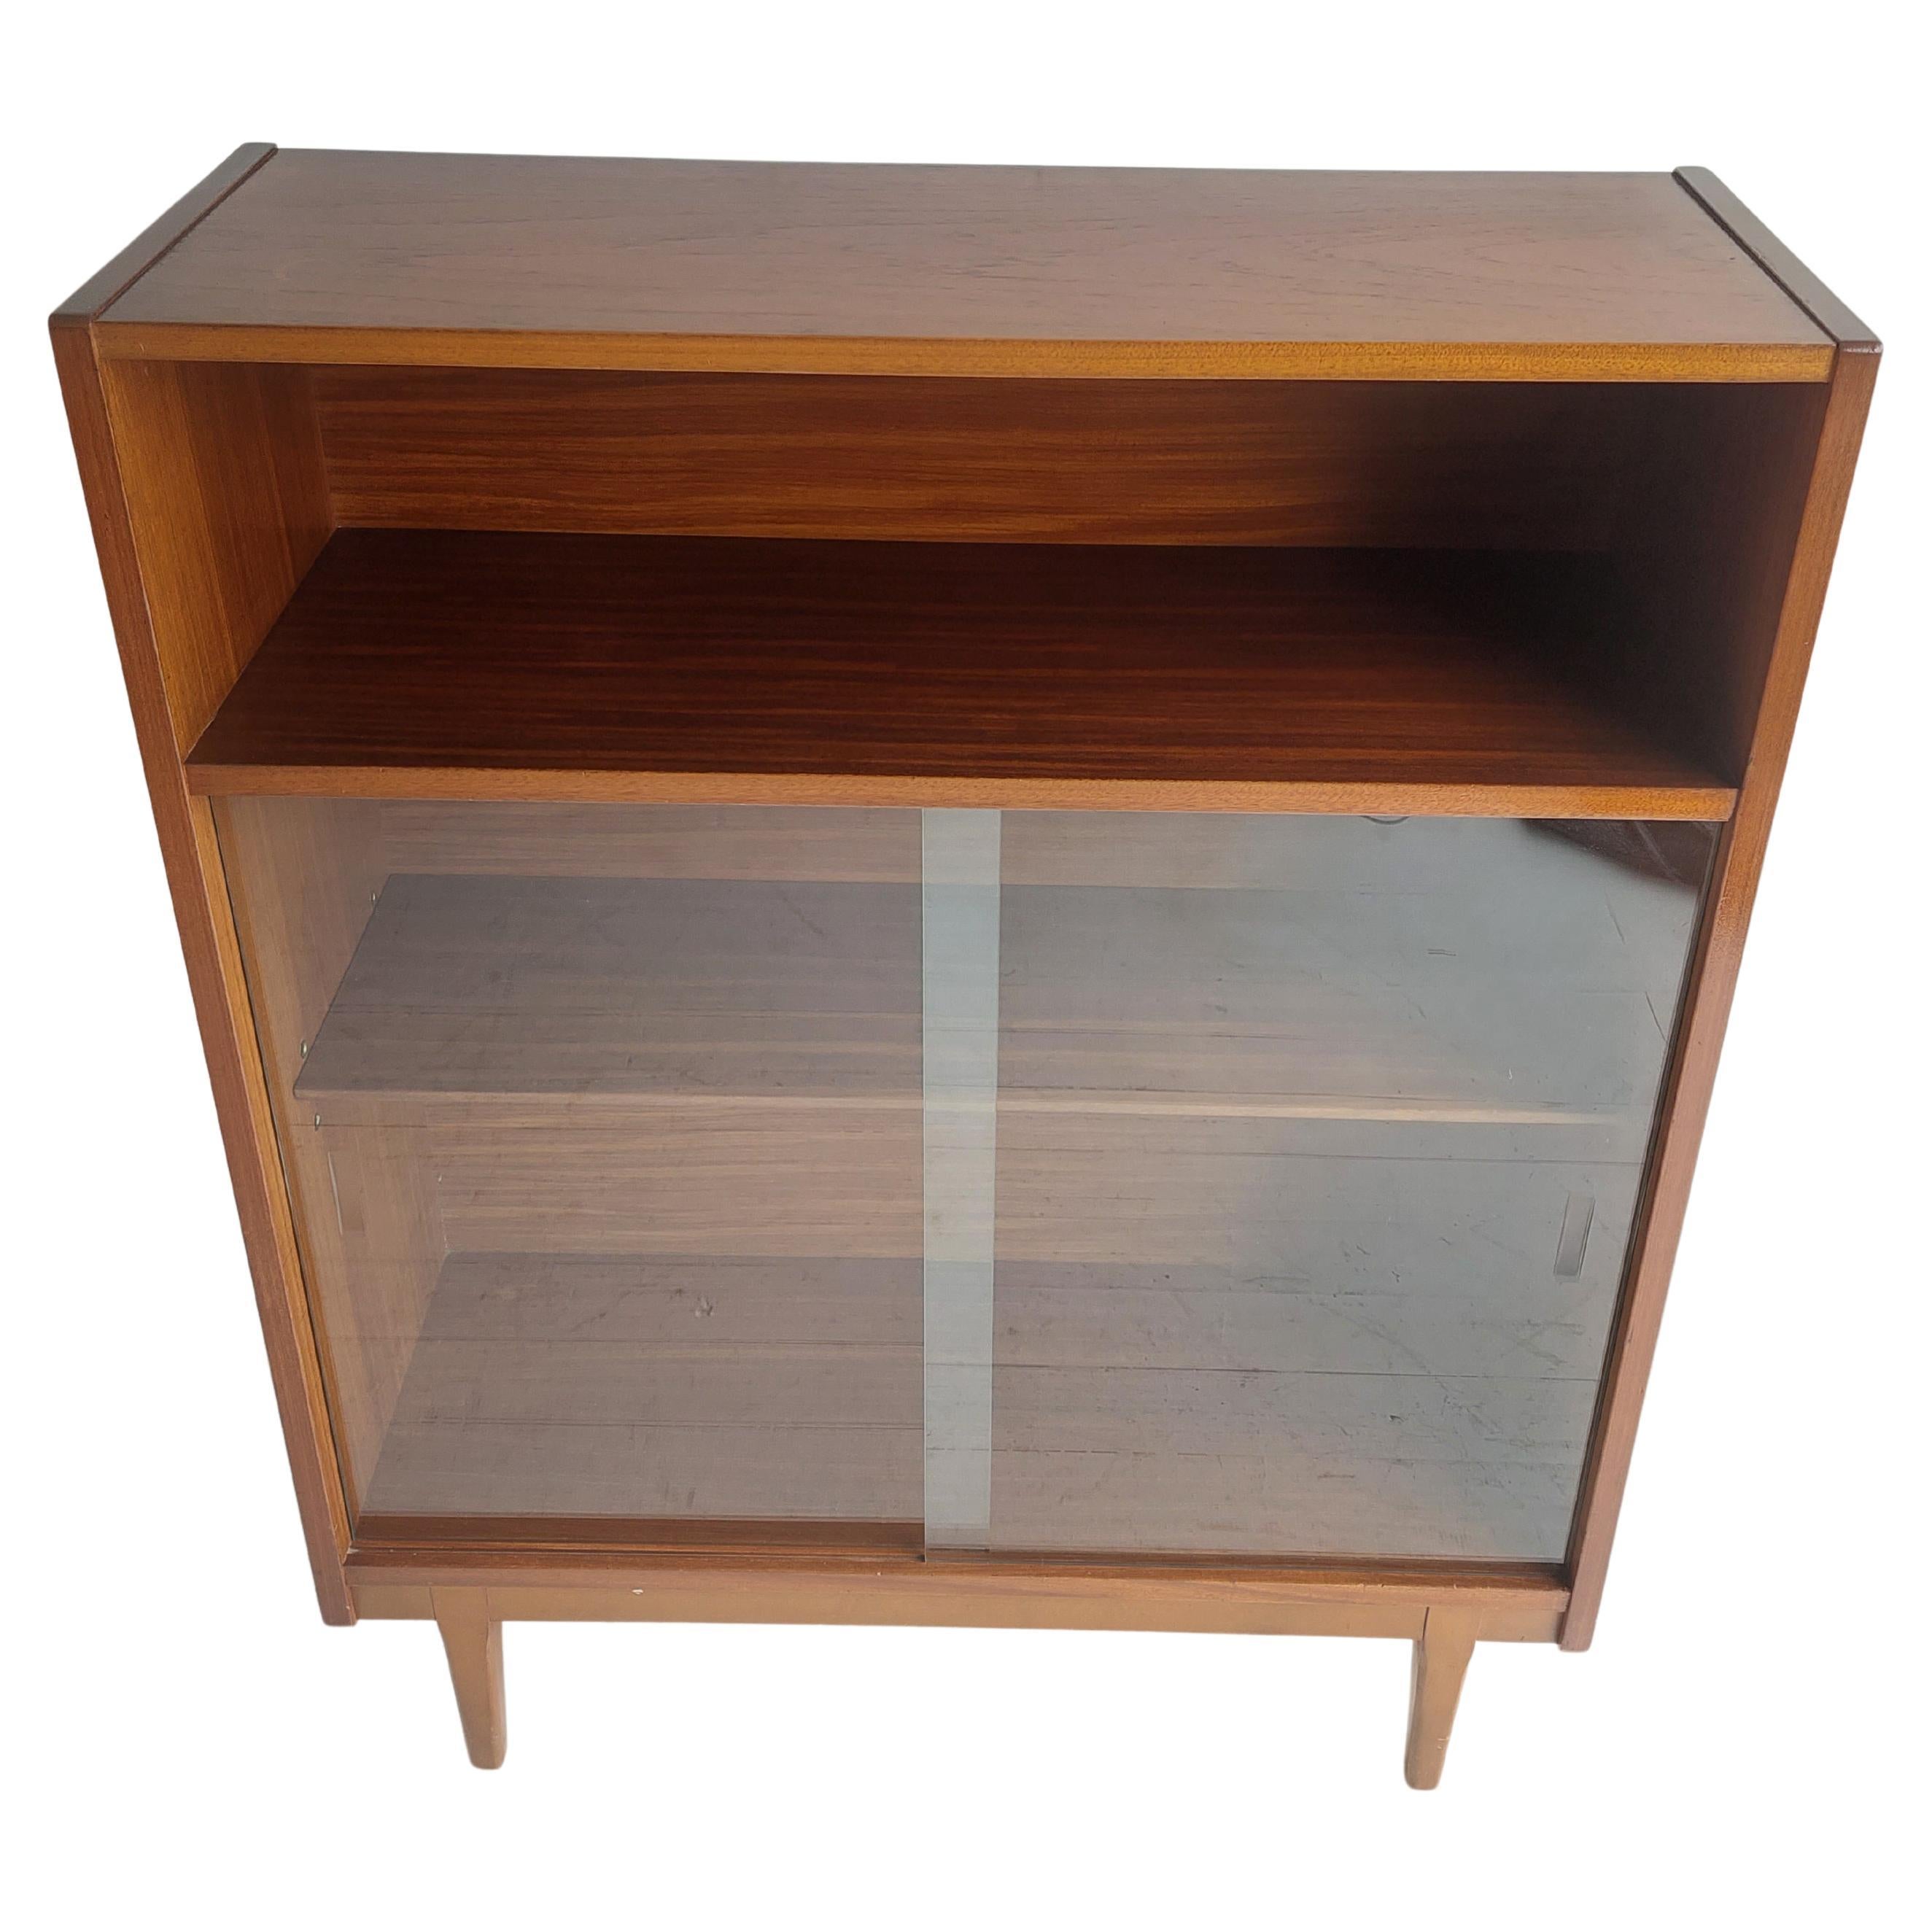 Midcentury Nathan Teak Glazed Bookcase Display Unit Cabinet Danish Style, 60s